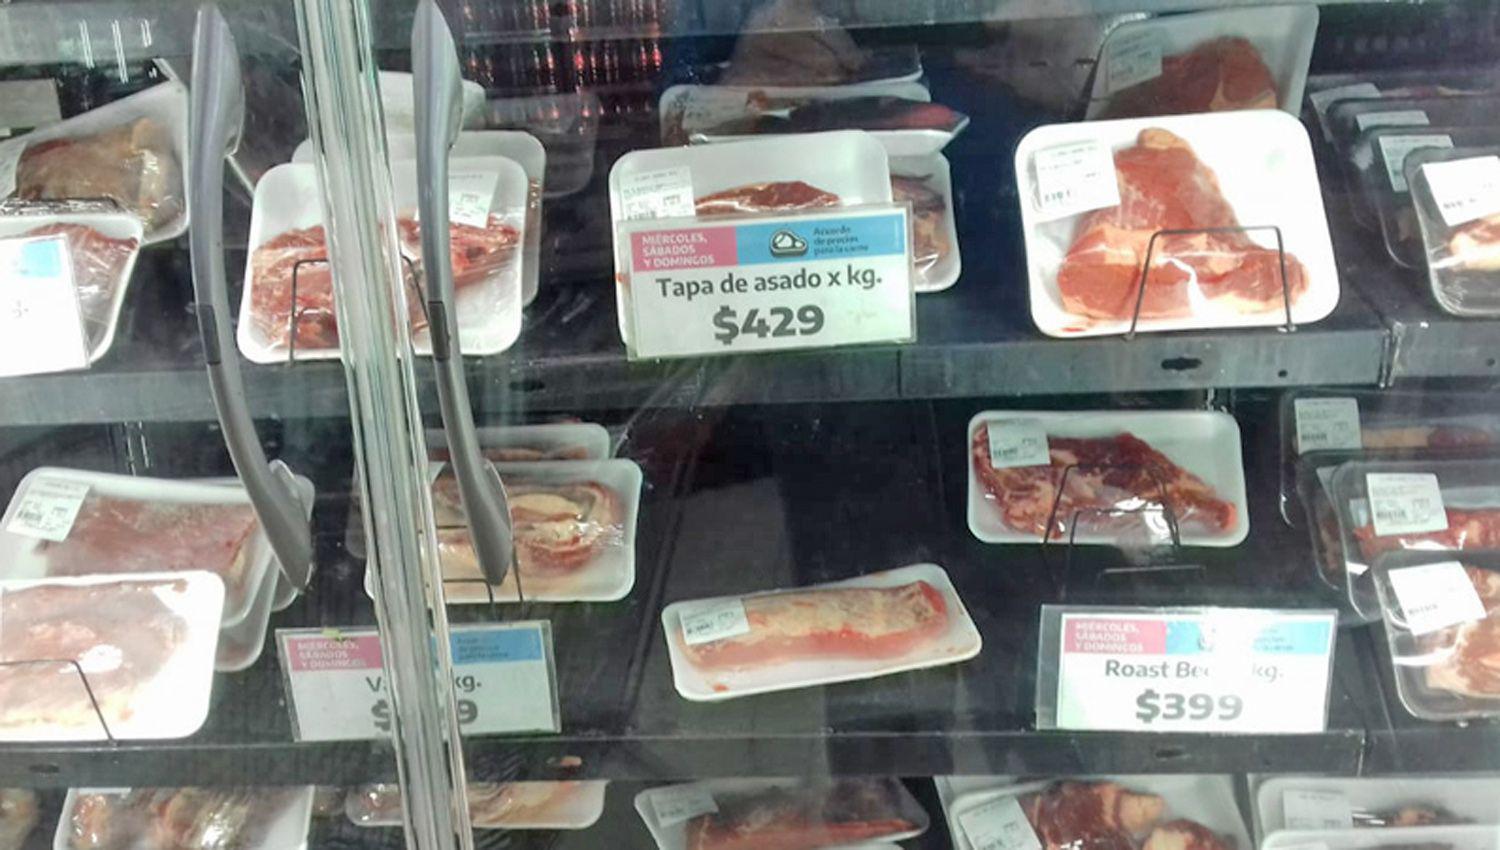 La carne rebajada tiene gran aceptacioacuten y demanda tanto en supermercados como carniceriacuteas